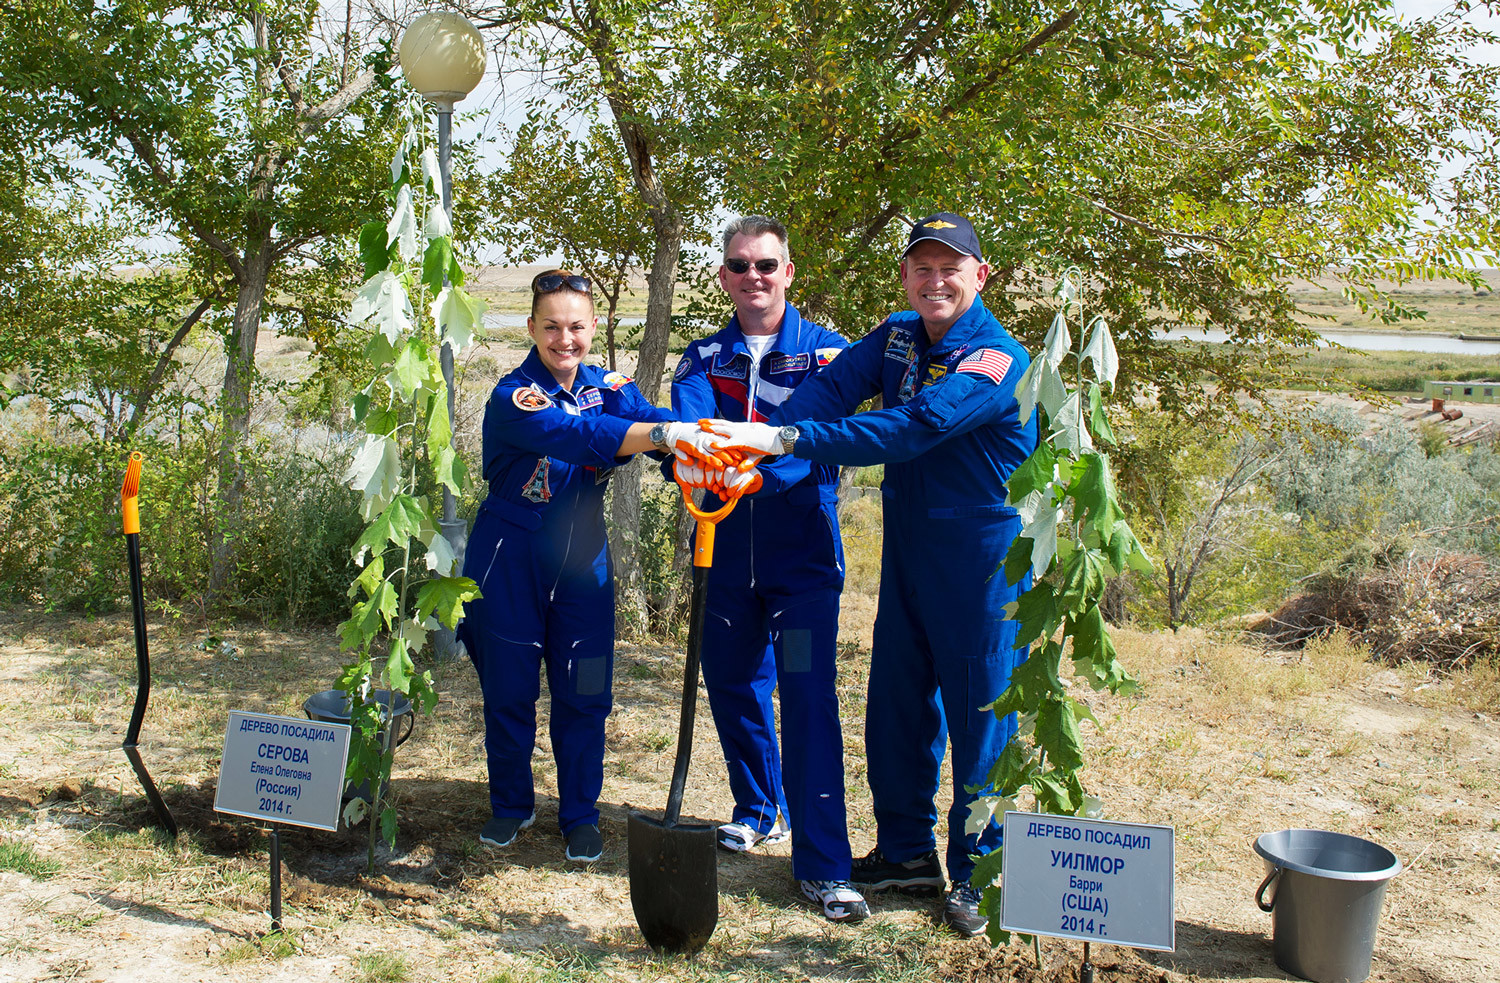 Tripulação da Soiuz TMA-14M: Elena Serova (esq.), Aleksandr Samokutiaiev (centro), e o norte-americano Barry Wilmore plantando uma árvore em 17/09/2014.